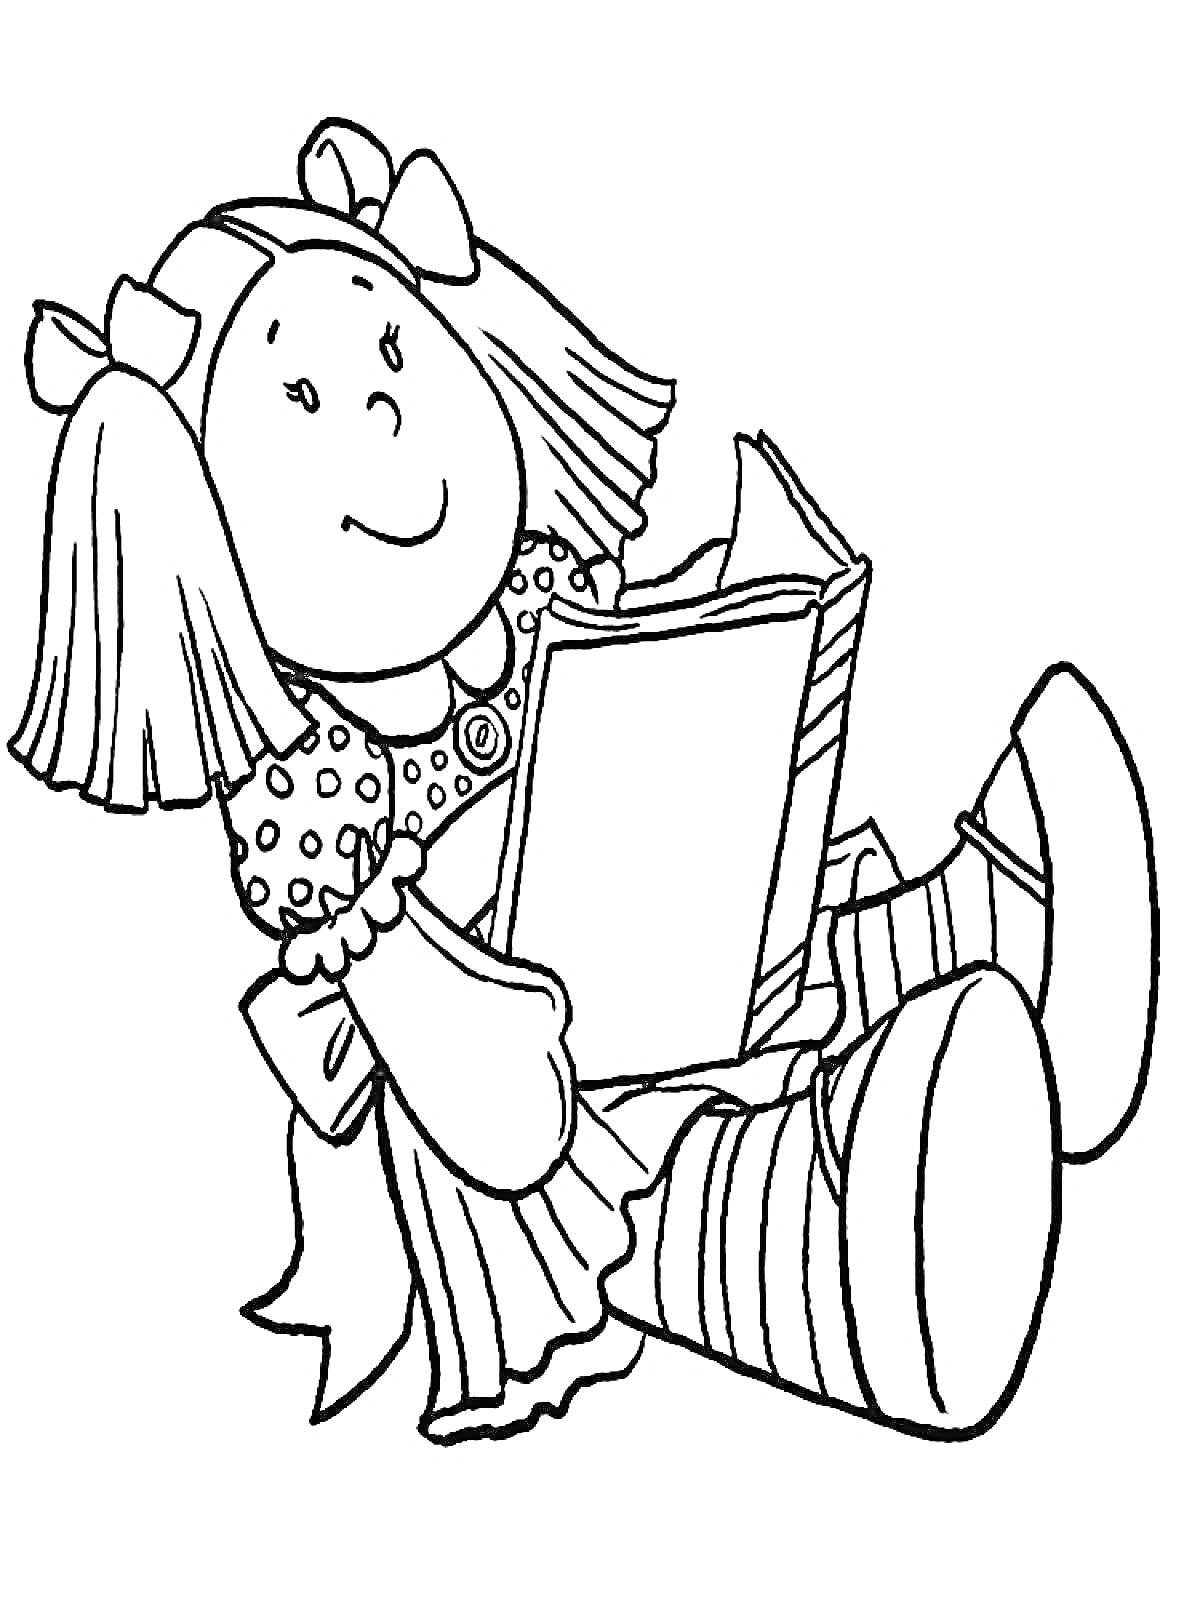 Кукла в платье с бантиками, сидящая и читающая книгу